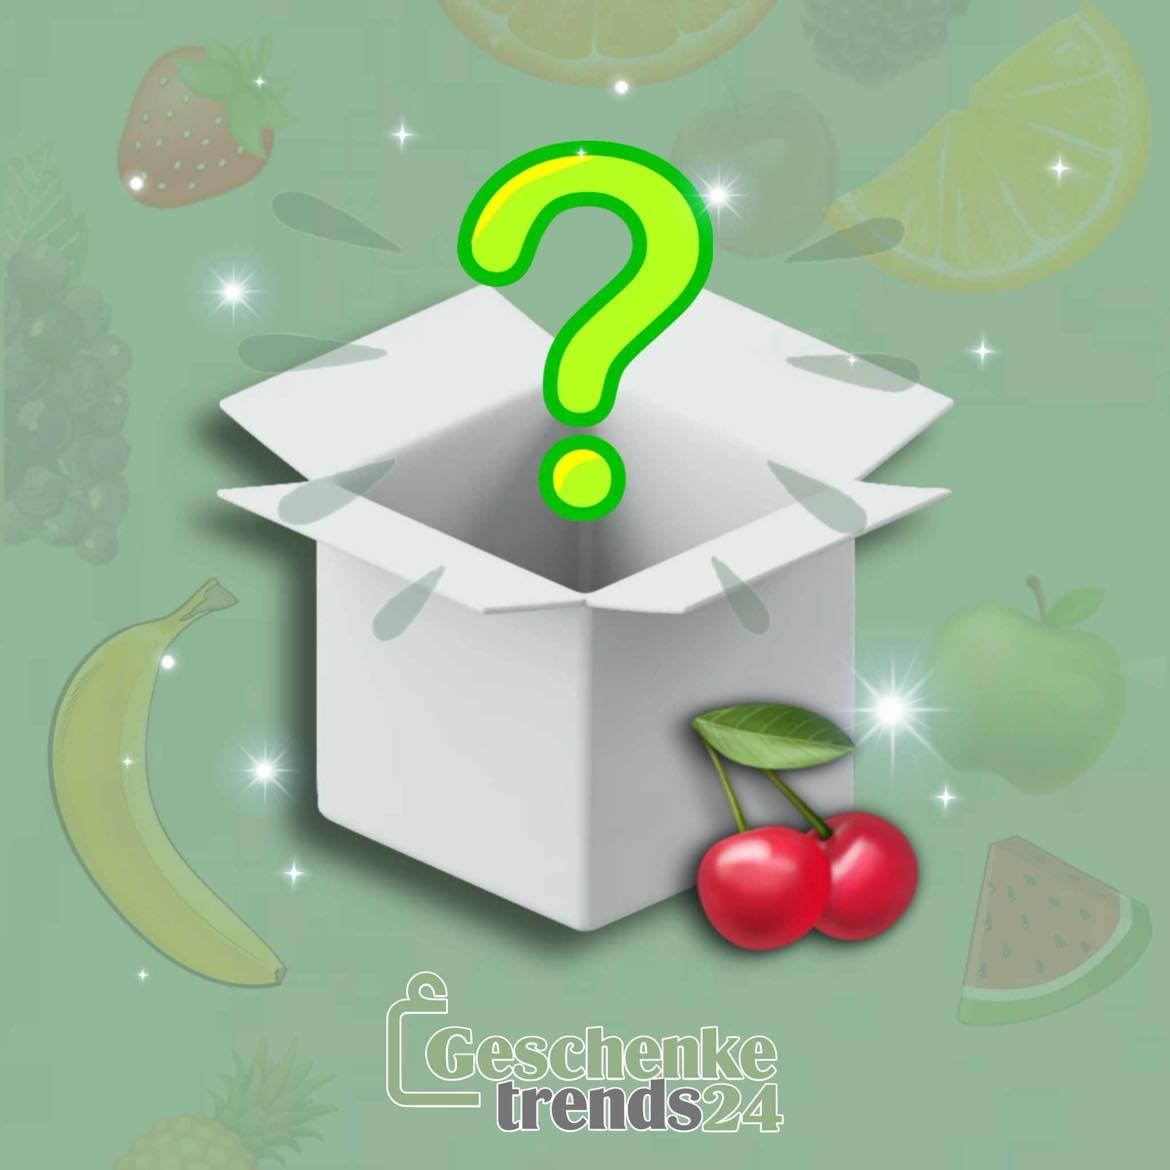 Mystery-Box für echte Frucht Fans!